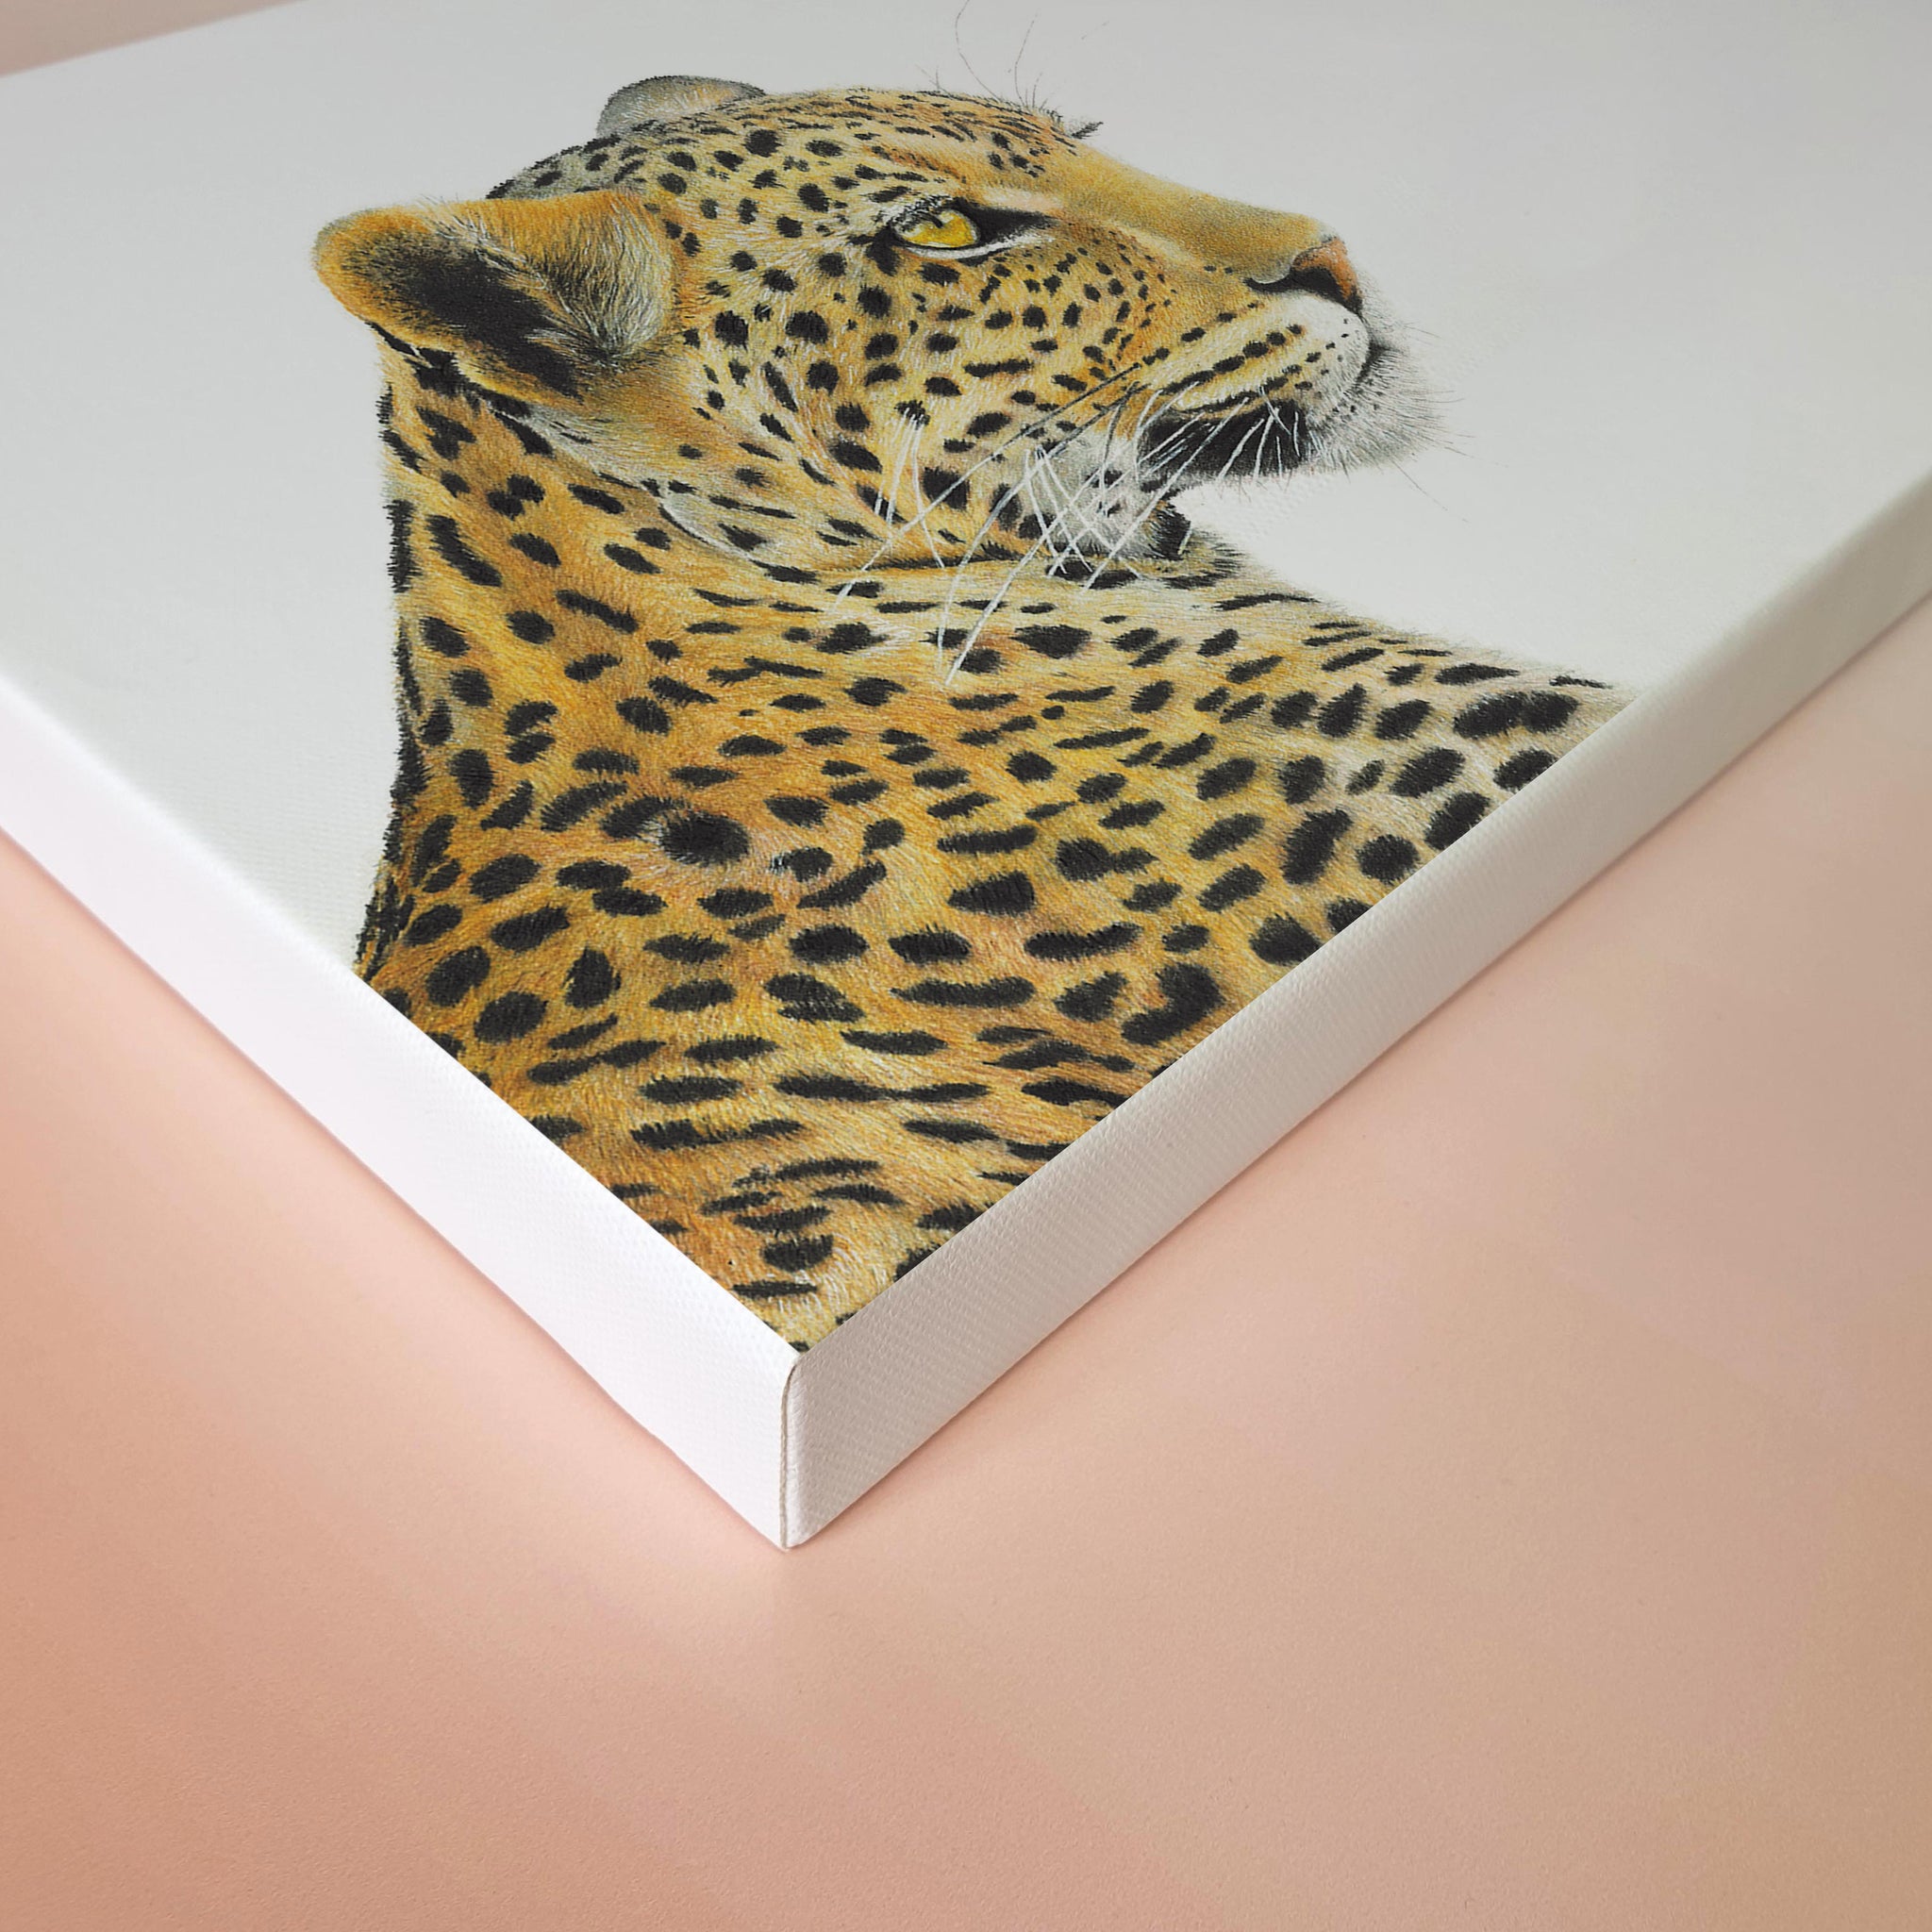 Leopard portrait nature artwork stretched onto canvas